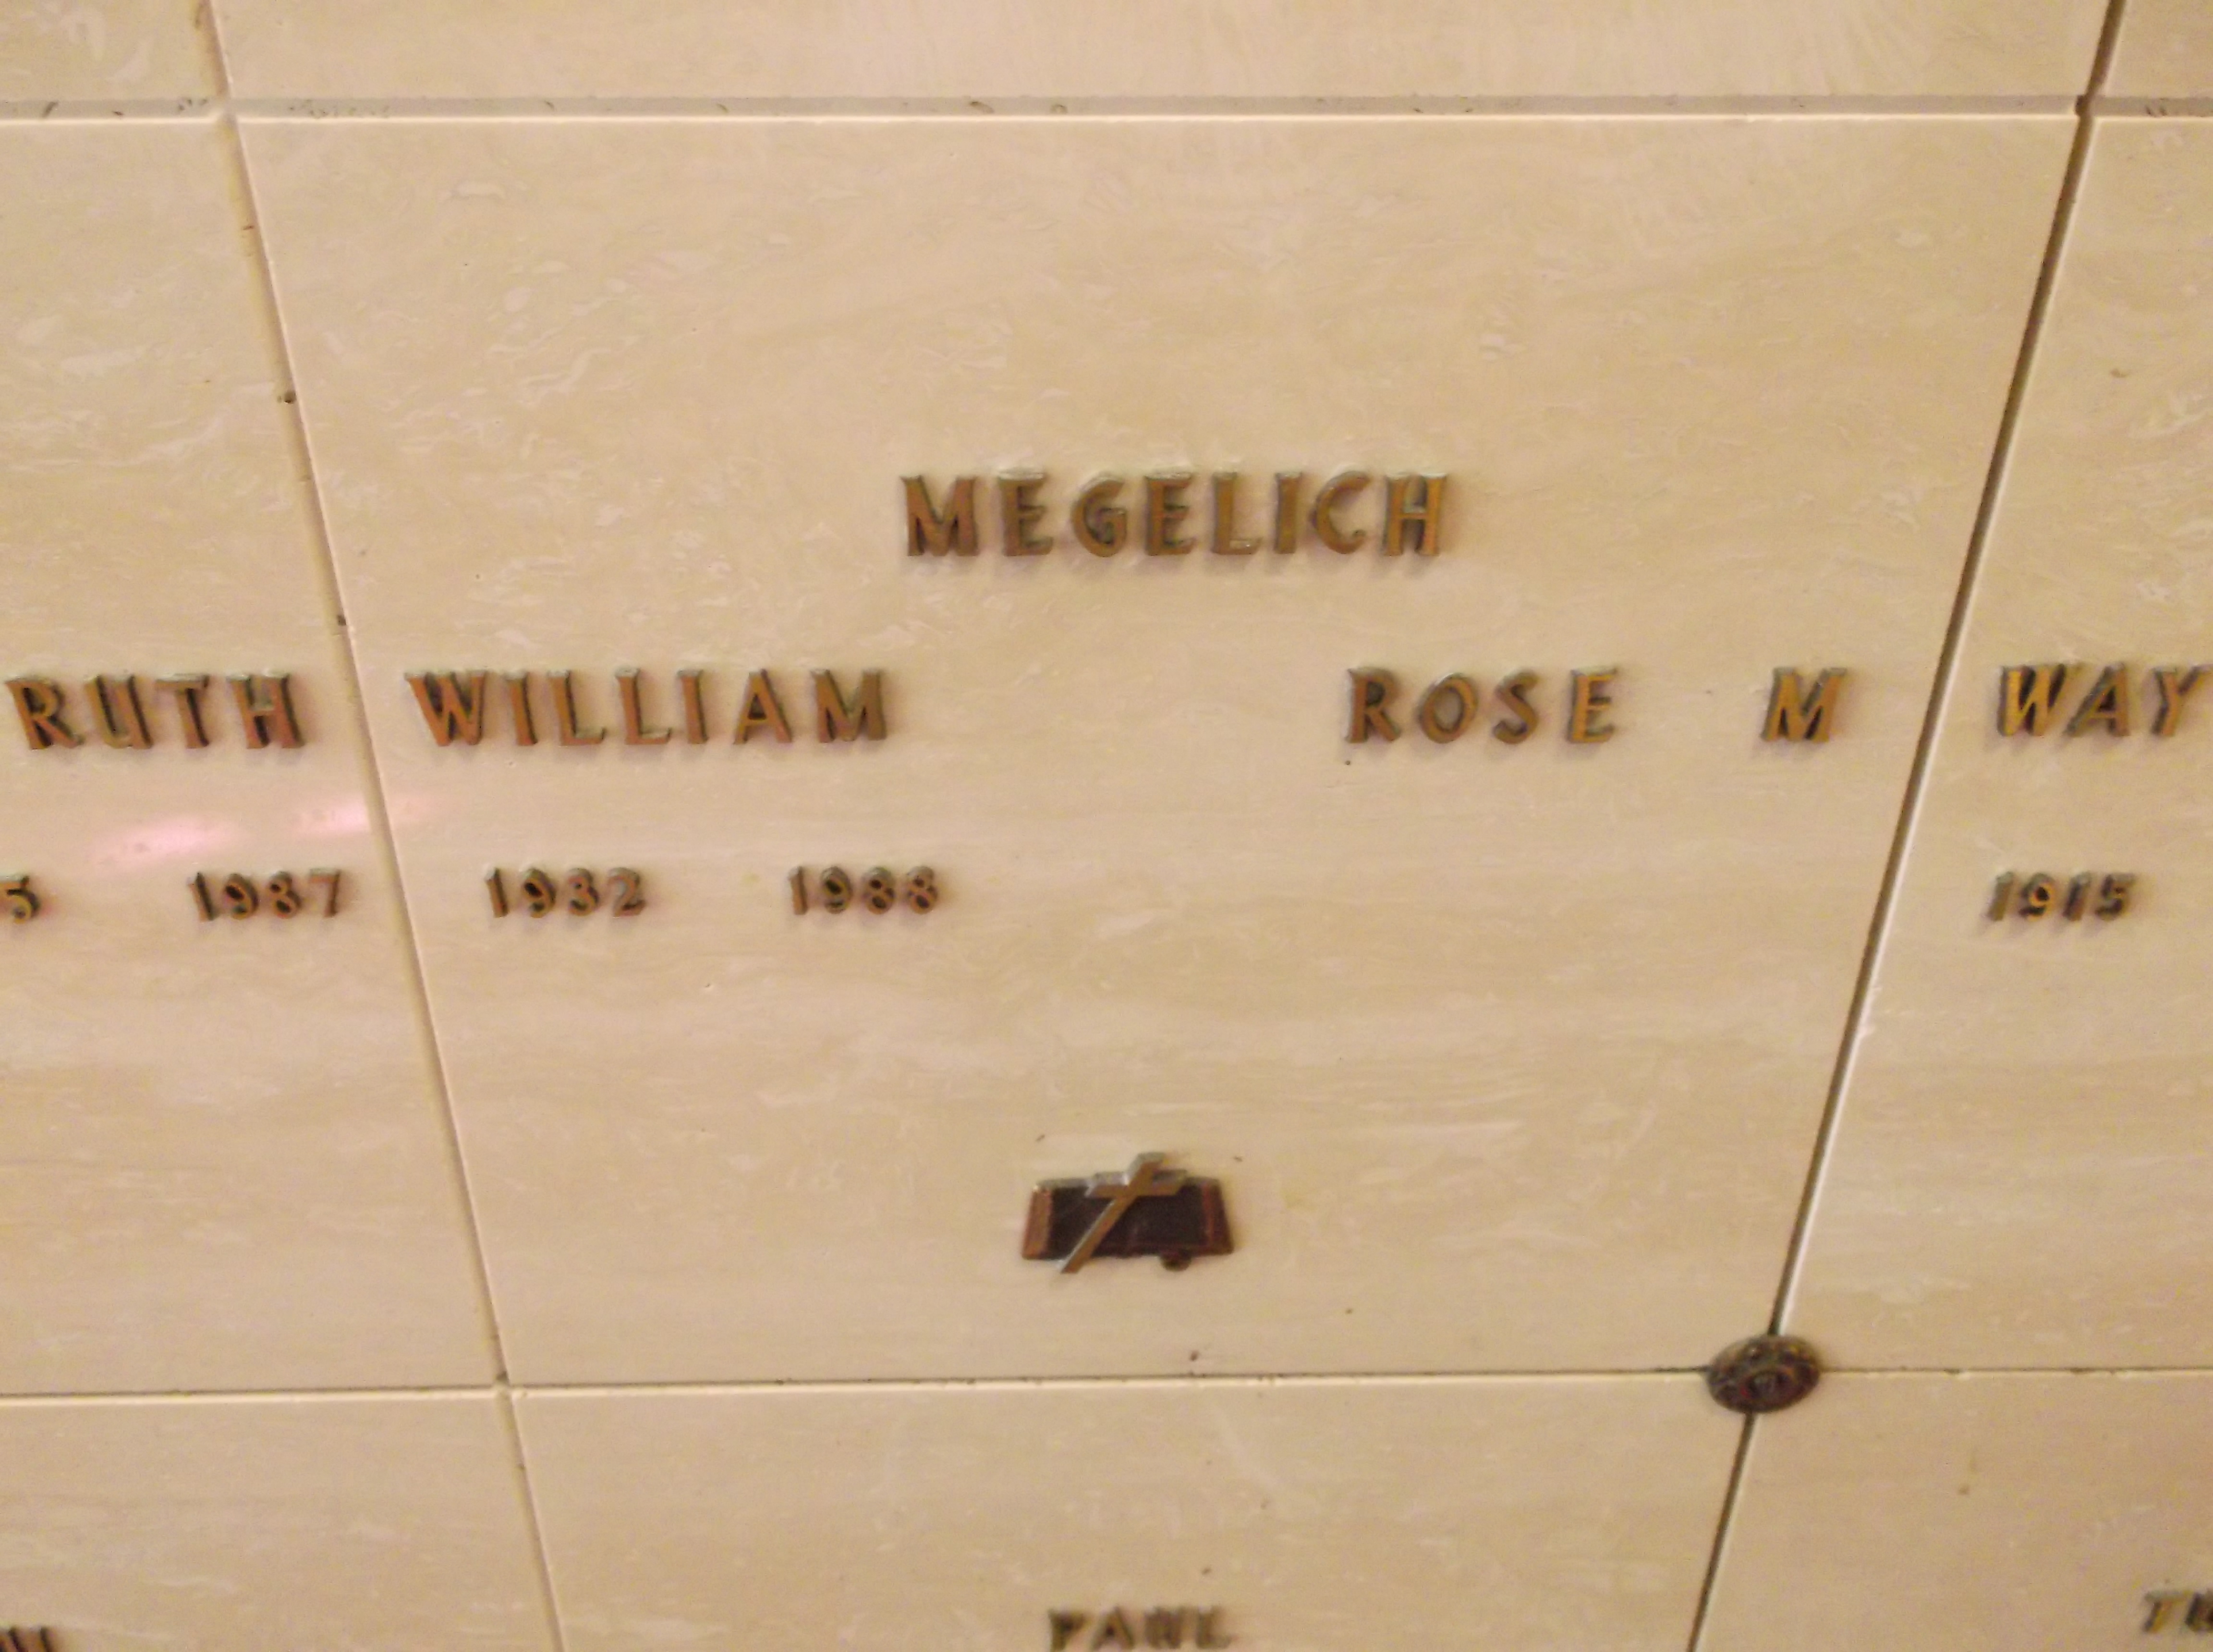 William Megelich